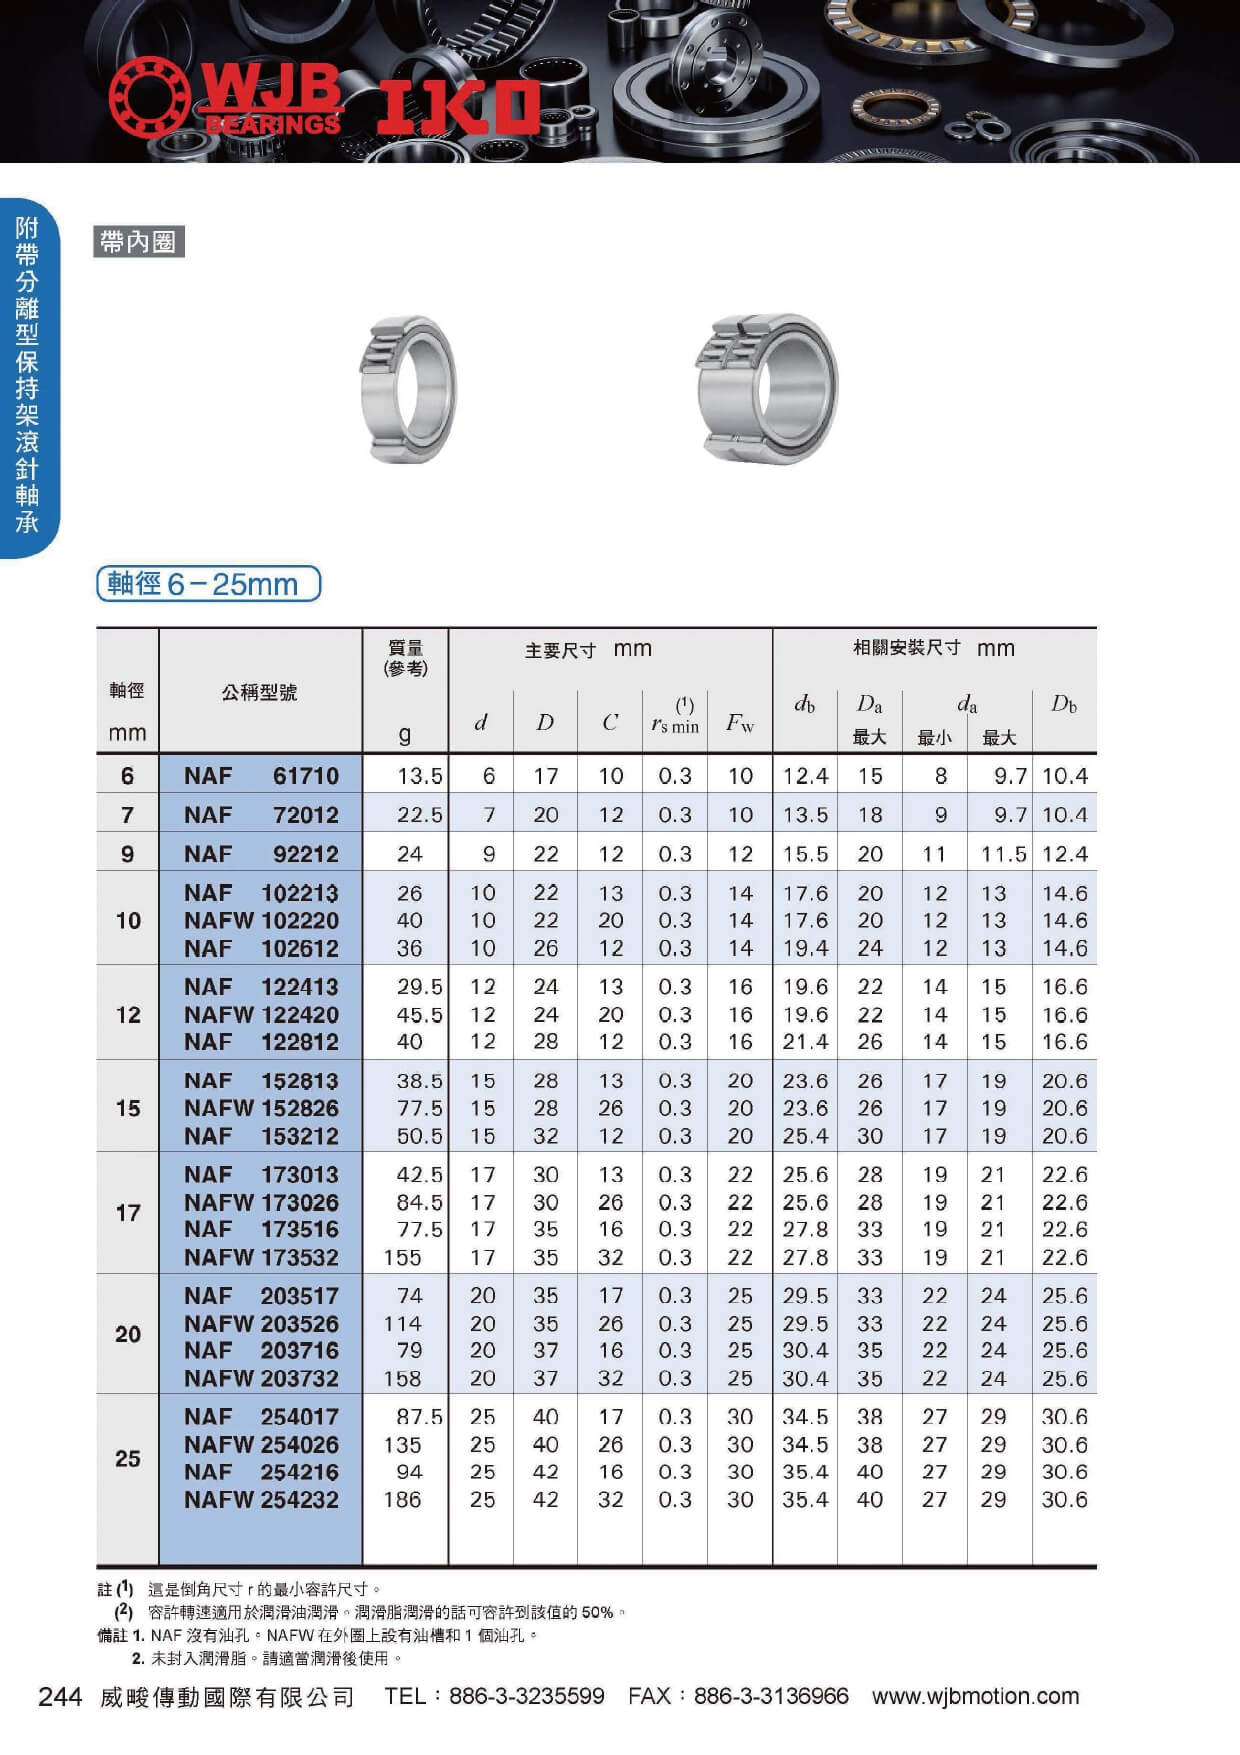 NAF分離保持器針狀軸承規格表